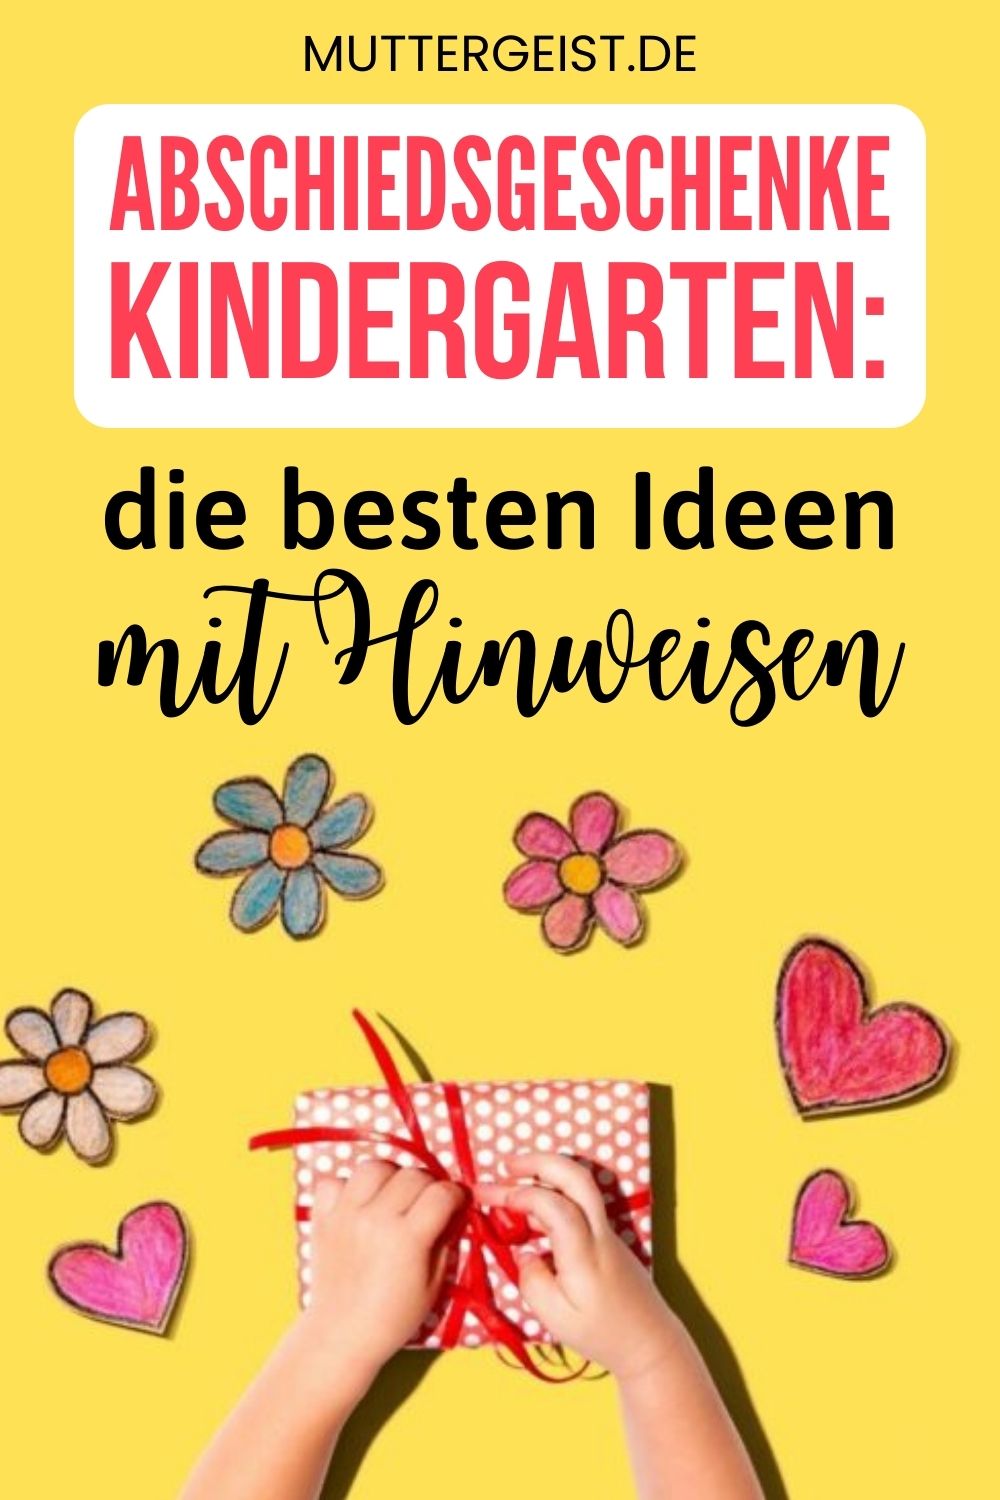 Abschiedsgeschenke Kindergarten – Die besten Ideen mit Hinweisen Pinterest Pinterest